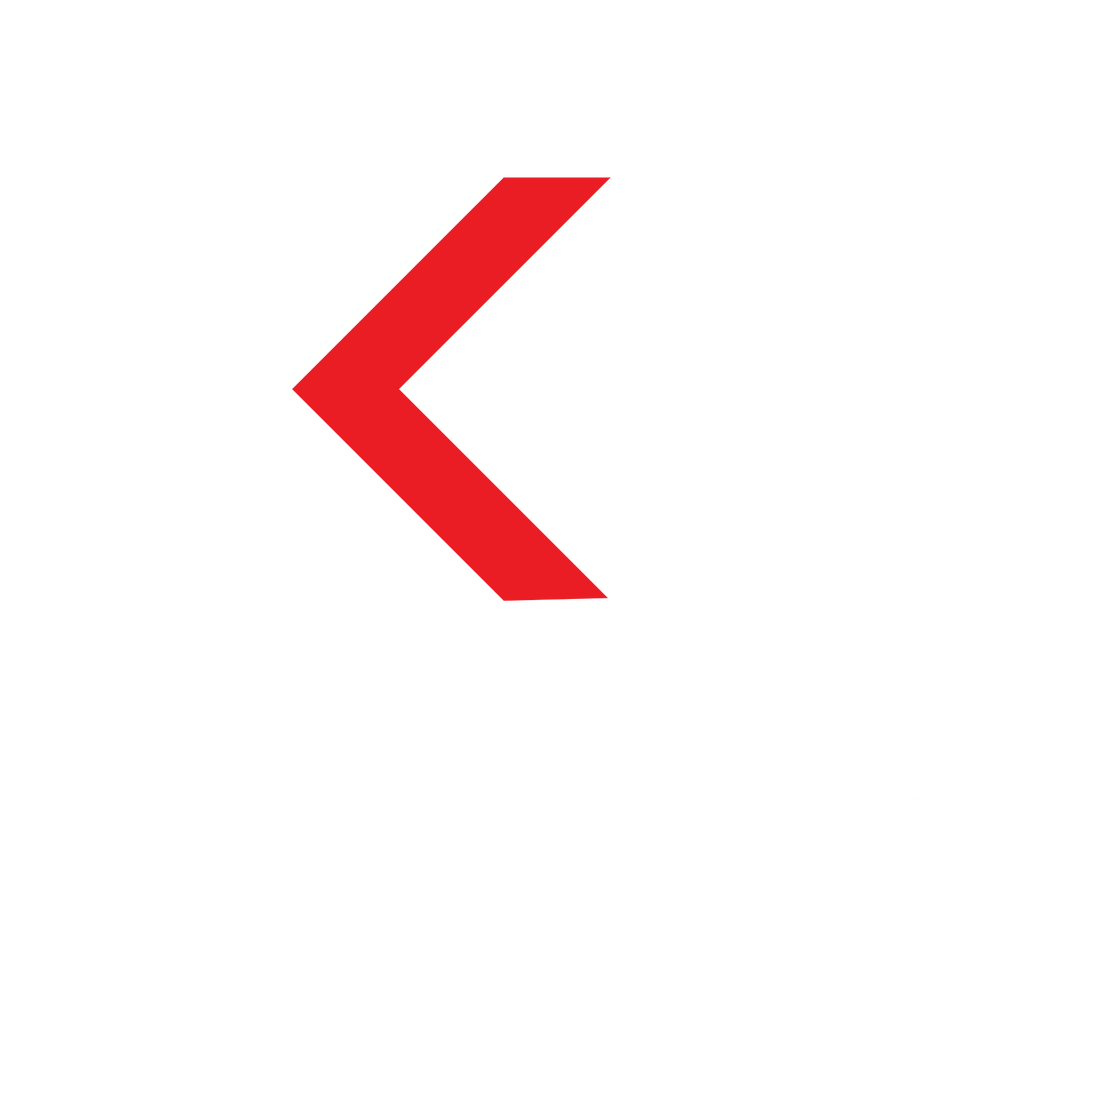 Koogan plastics